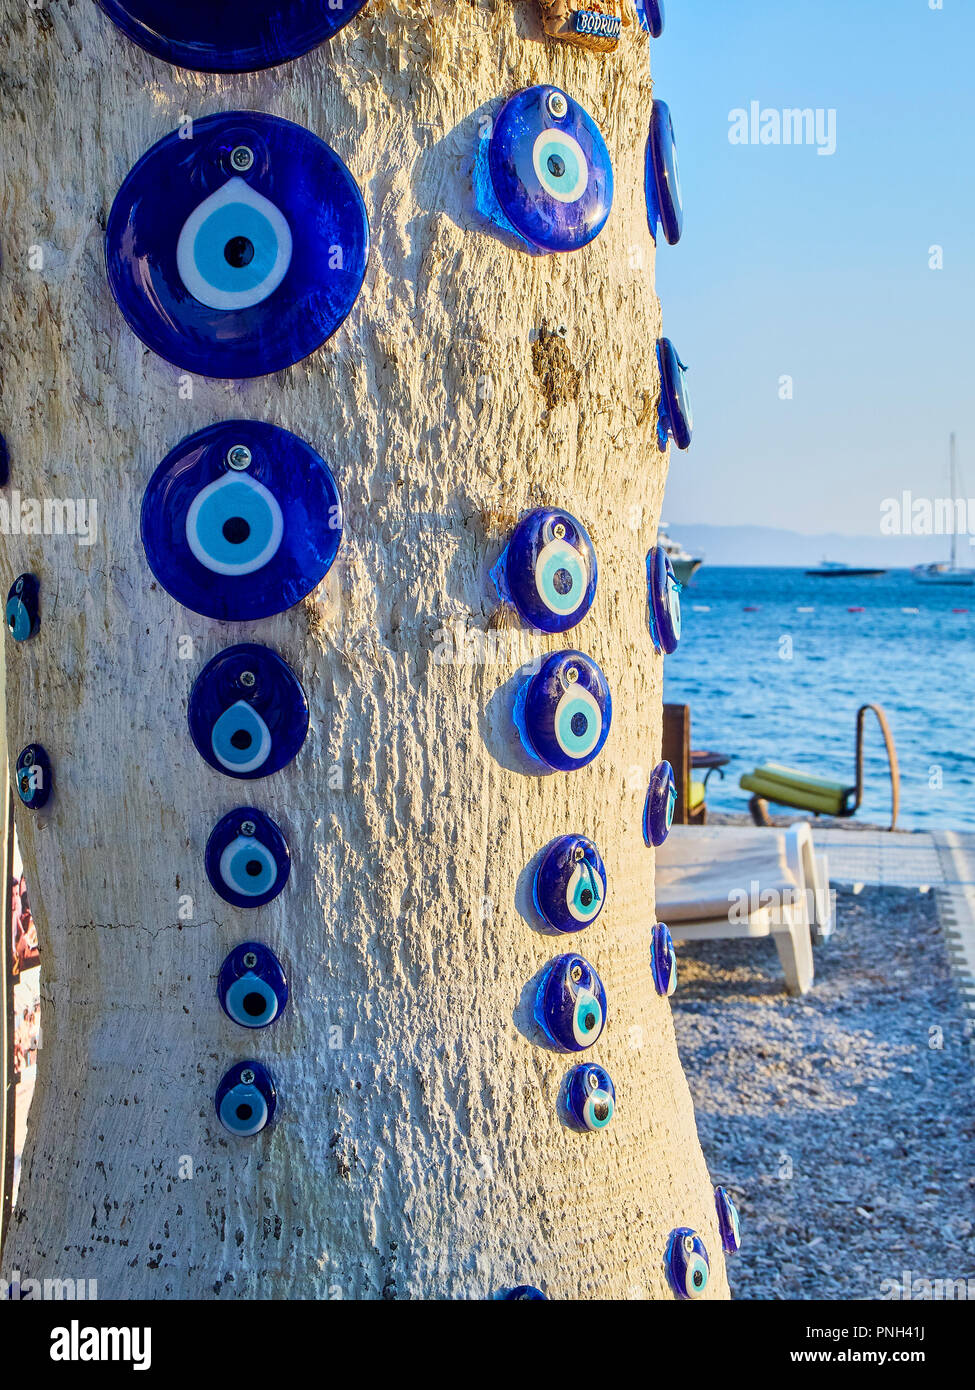 Beaucoup de Nazar boncugu, un oeil turc amulette en forme de vissé à un arbre avec la mer en arrière-plan. Banque D'Images